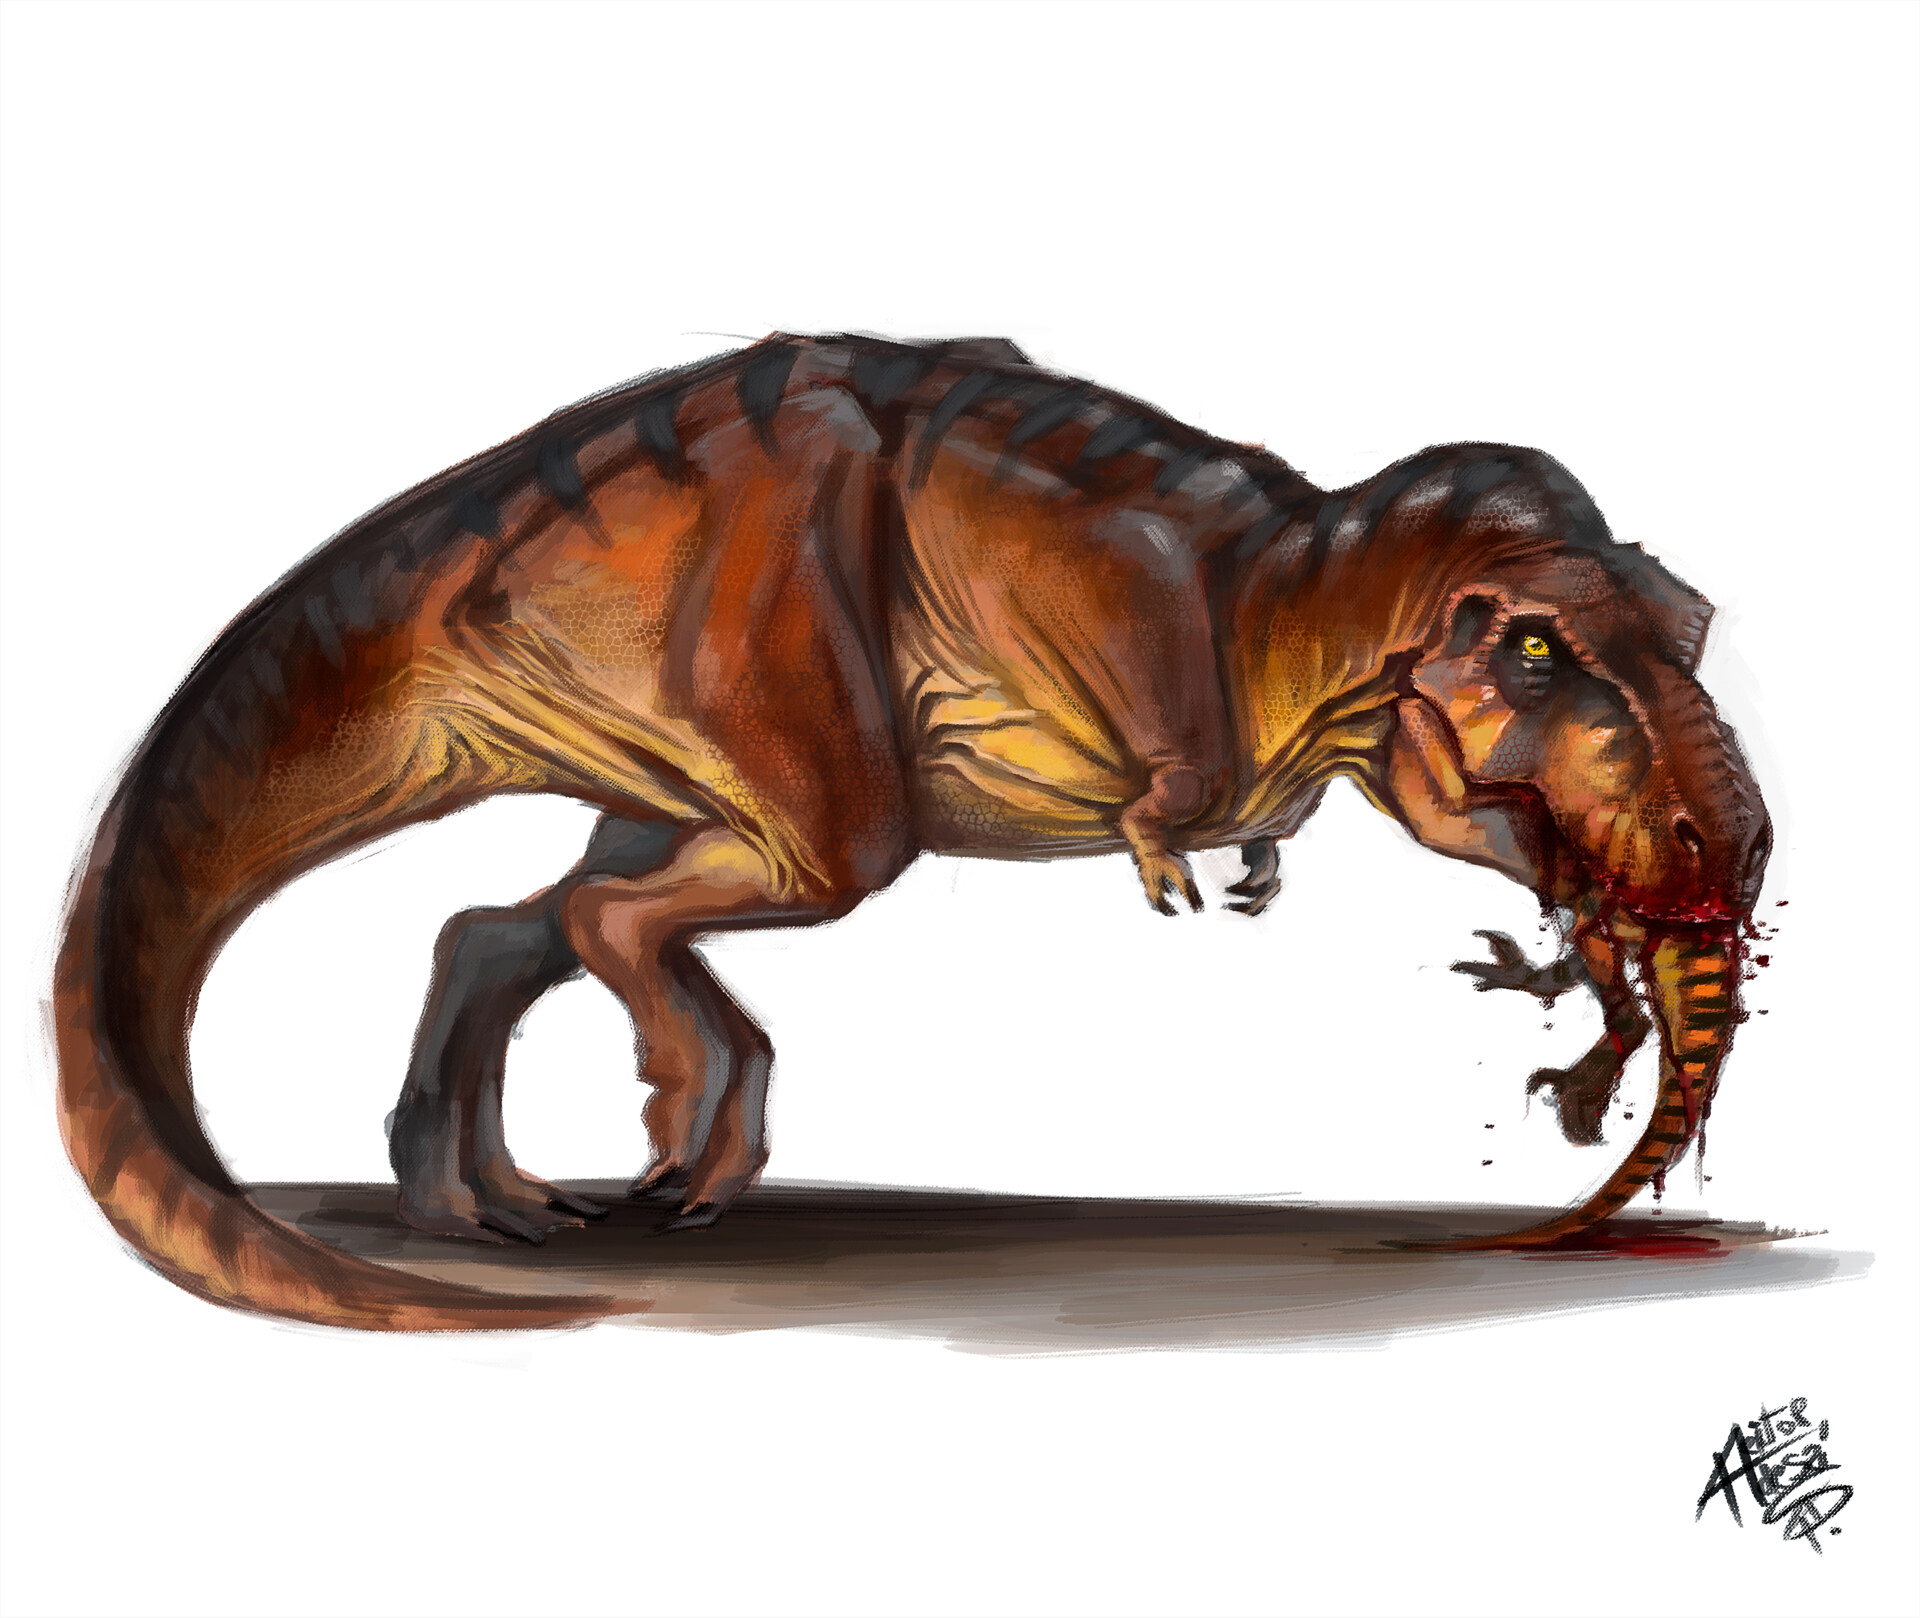 Spinosaurus VS T Rex - Jurassic Park 3 (COMO DESENHAR) - How To Draw  Spinosaurus VS T.Rex 